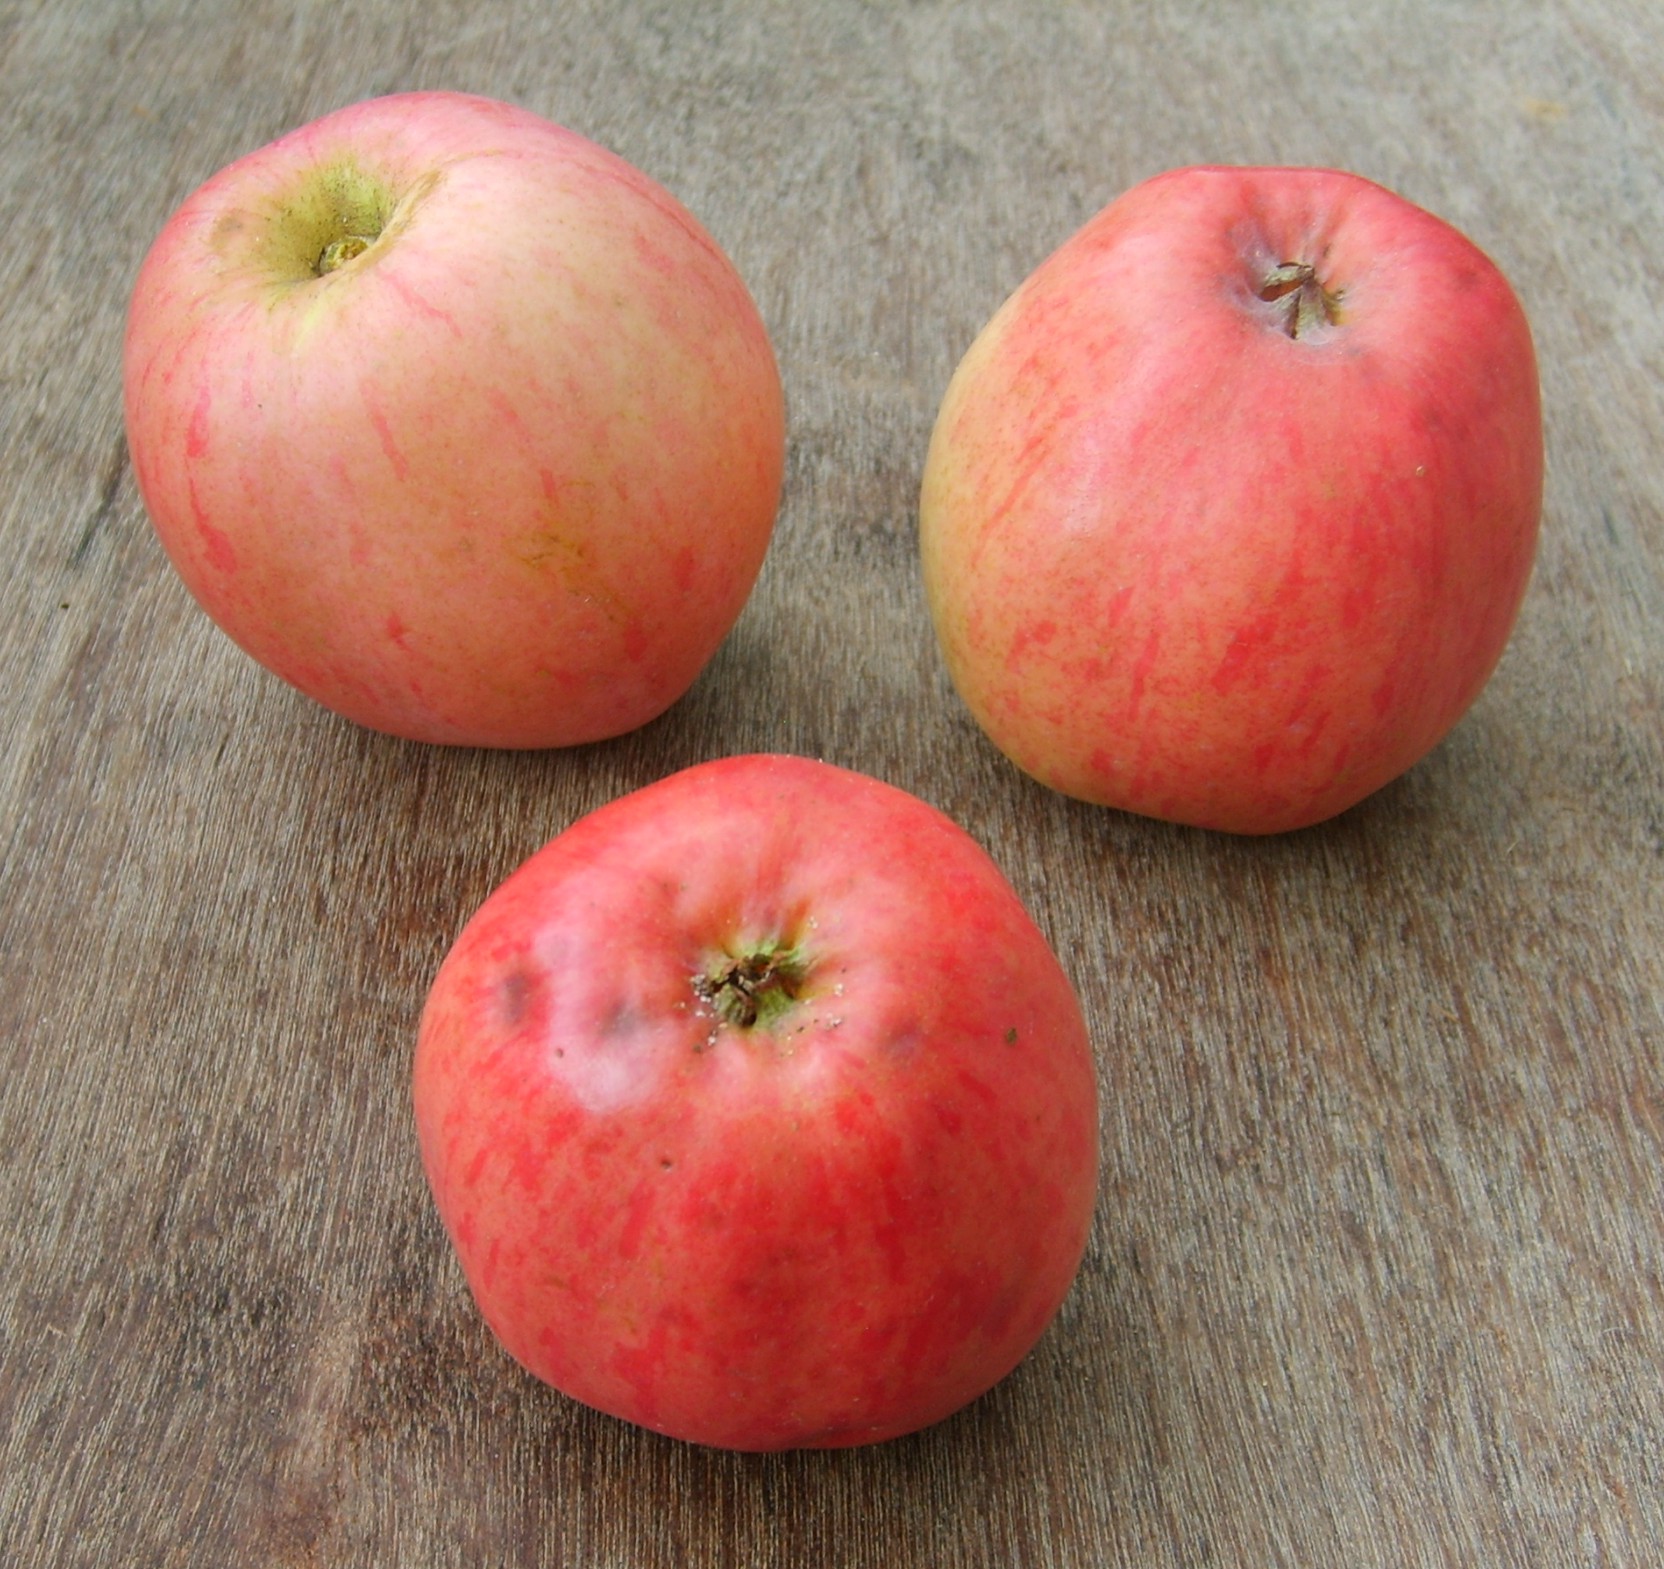 Alte Obstsorten, alte Apfelsorten - Ihr Obstbaum-Shop!  www.alte-obstsorten-online.de - Sommerapfel-Apfelbaum ´Roter Klarapfel´  (Augustapfel) - Apfelsorten direkt aus der Obstbaumschule!